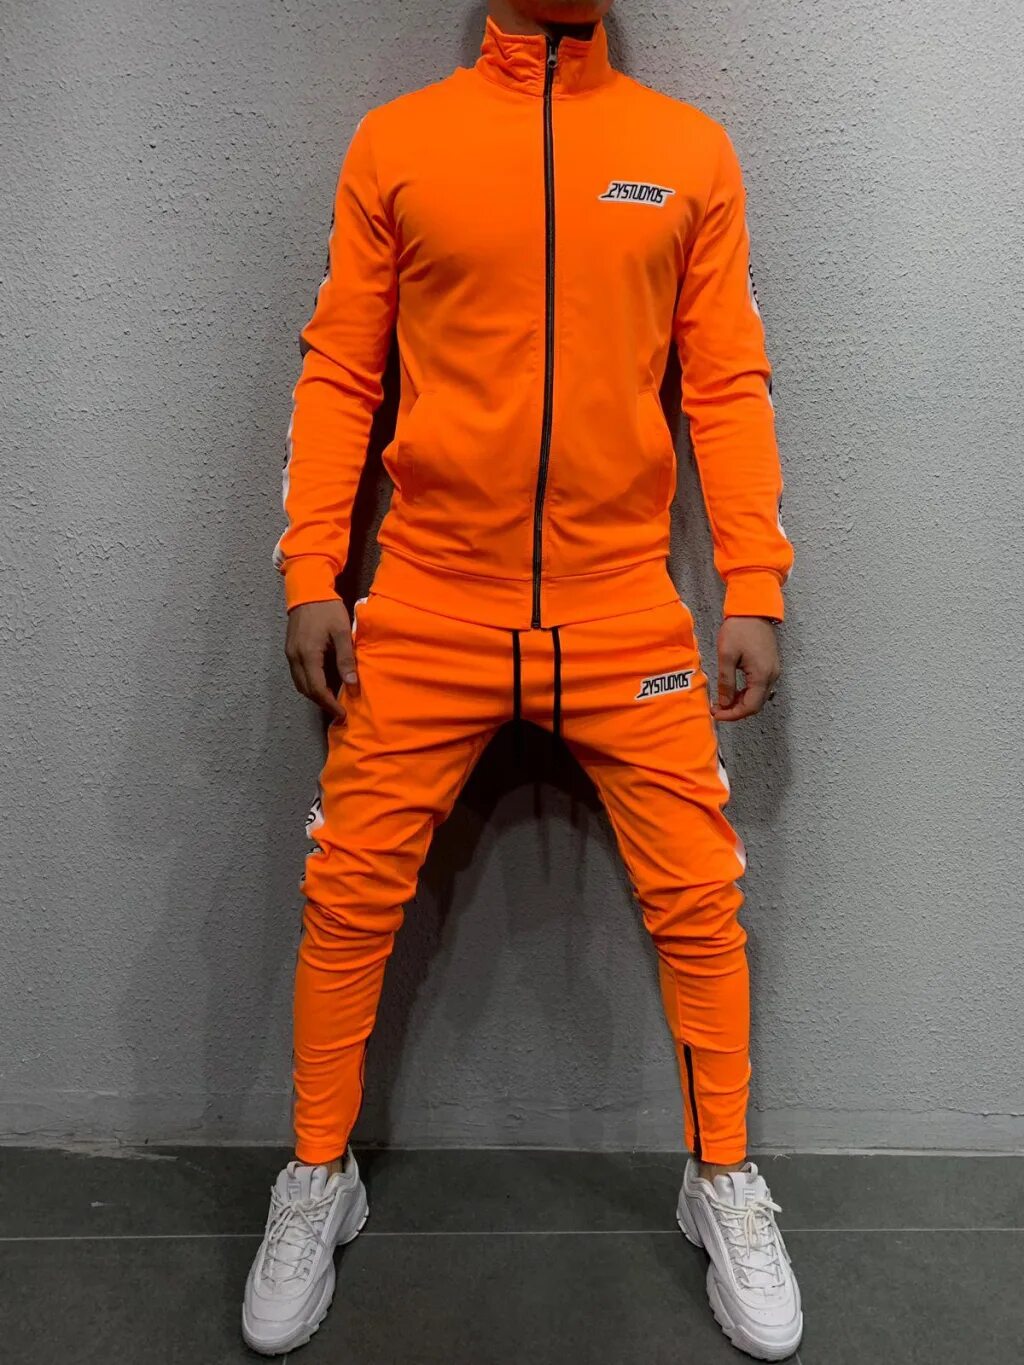 Оранжевый спортивный костюм. Спортивный костюм найк оранжевый. Оранжевый костюм адидас. Оранжевый спортивный костюм мужской адидас. Спортивка найк оранжевая.